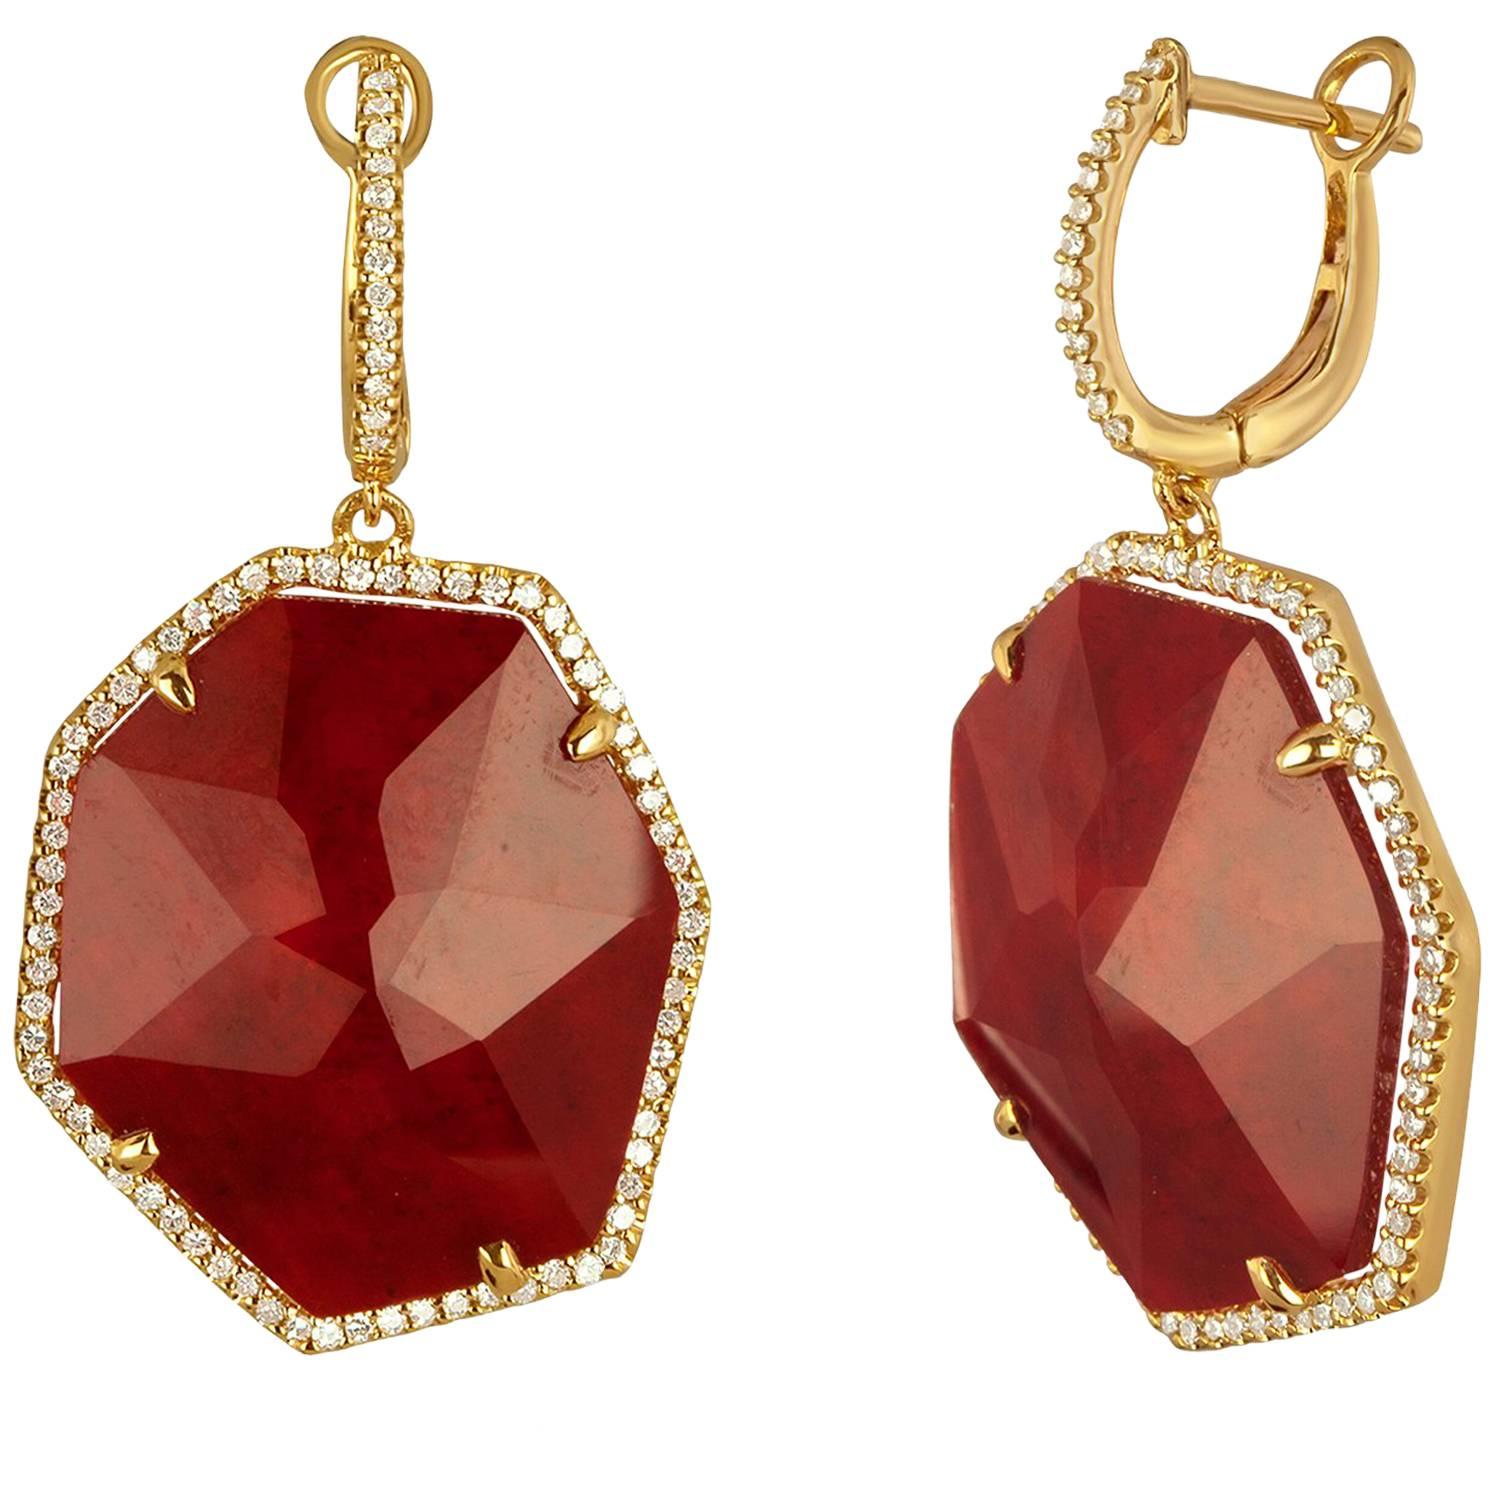 Pendants d'oreilles en or avec doublet de rubis, cristal de roche et diamants de 20,47 carats